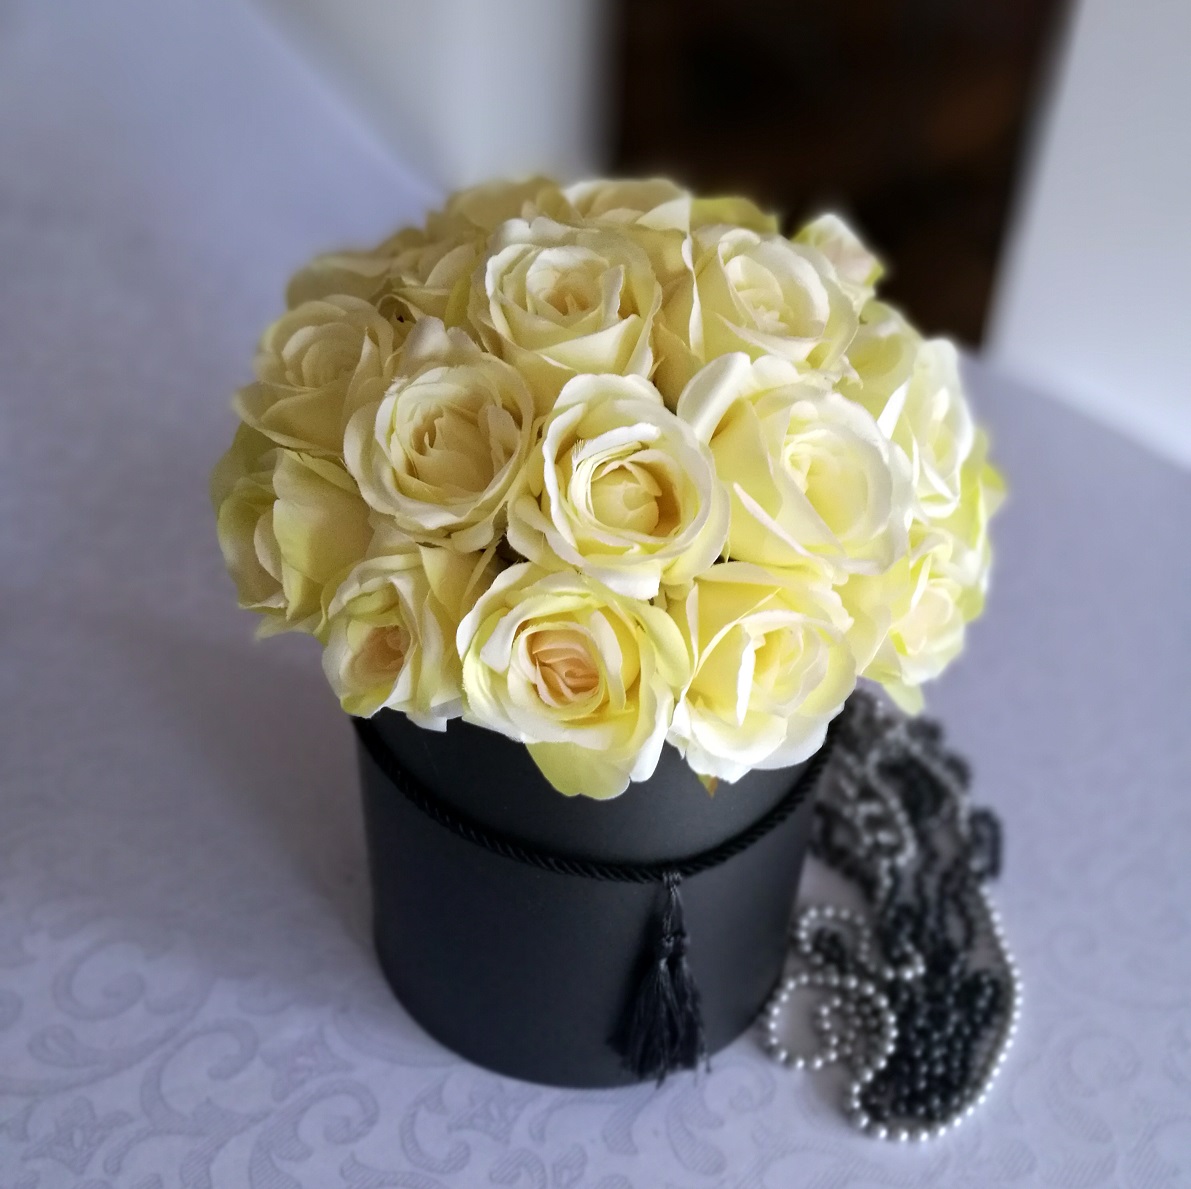 Flower box kremowe róże nr. 123